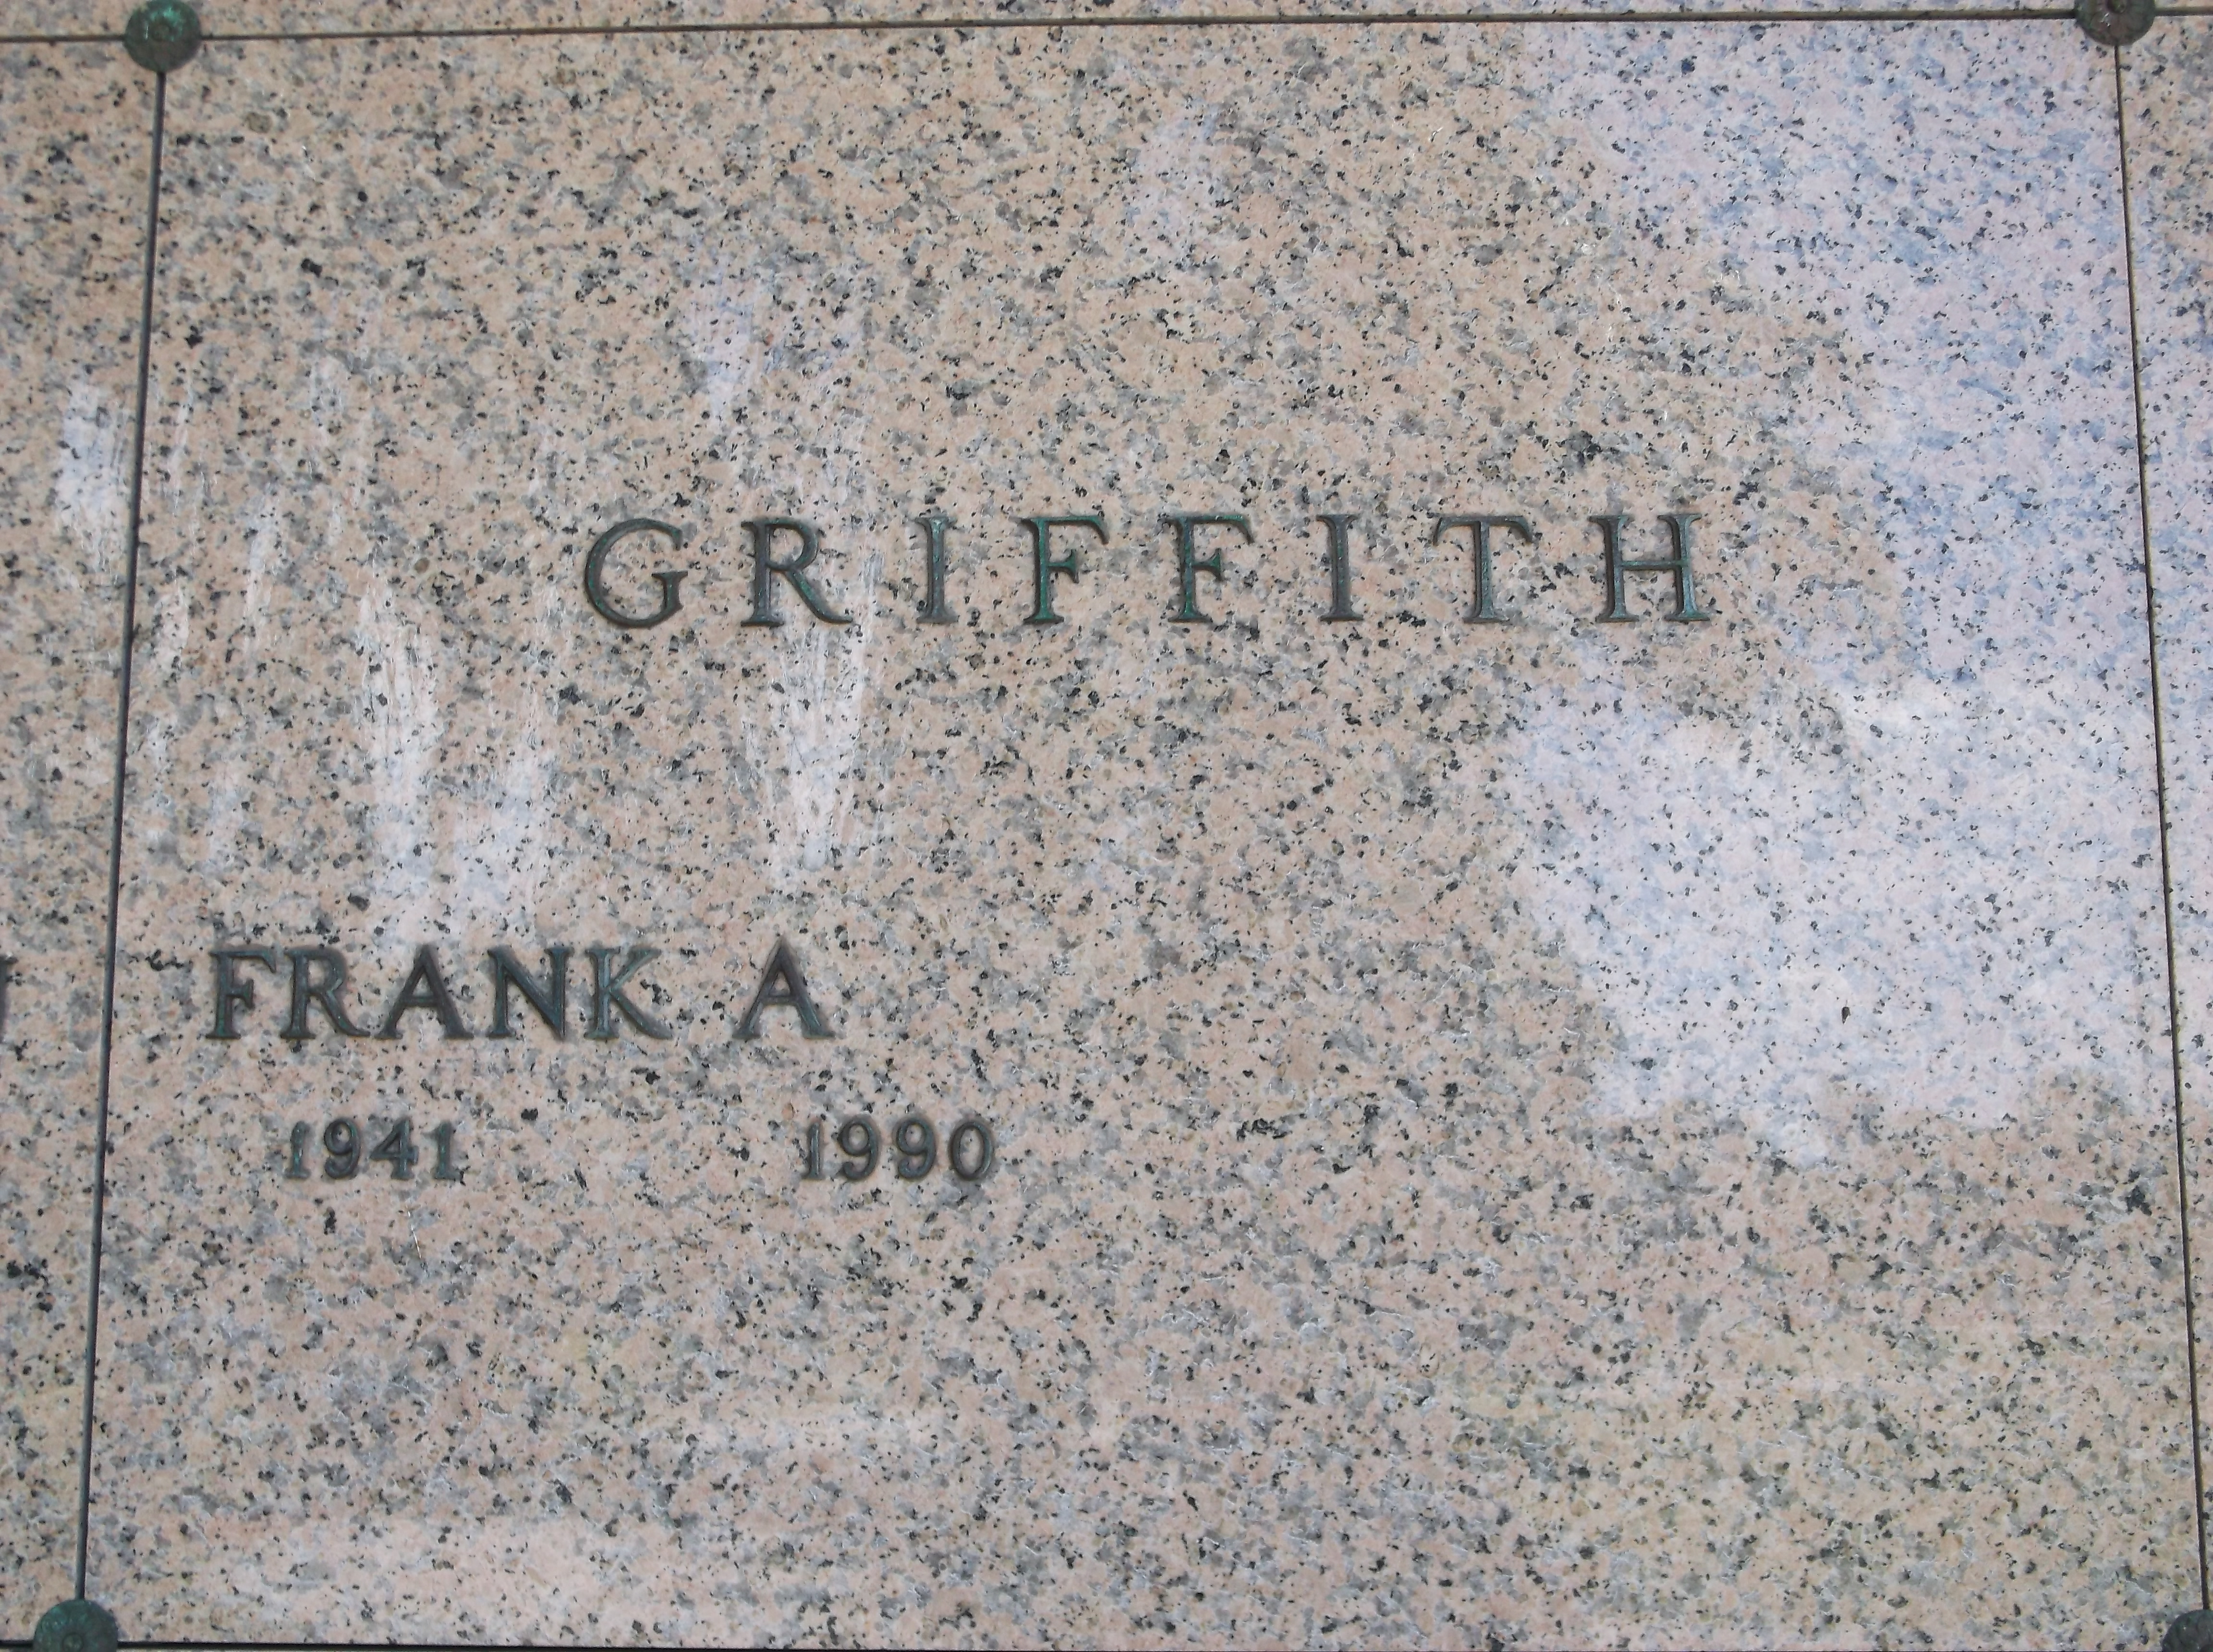 Frank A Griffith